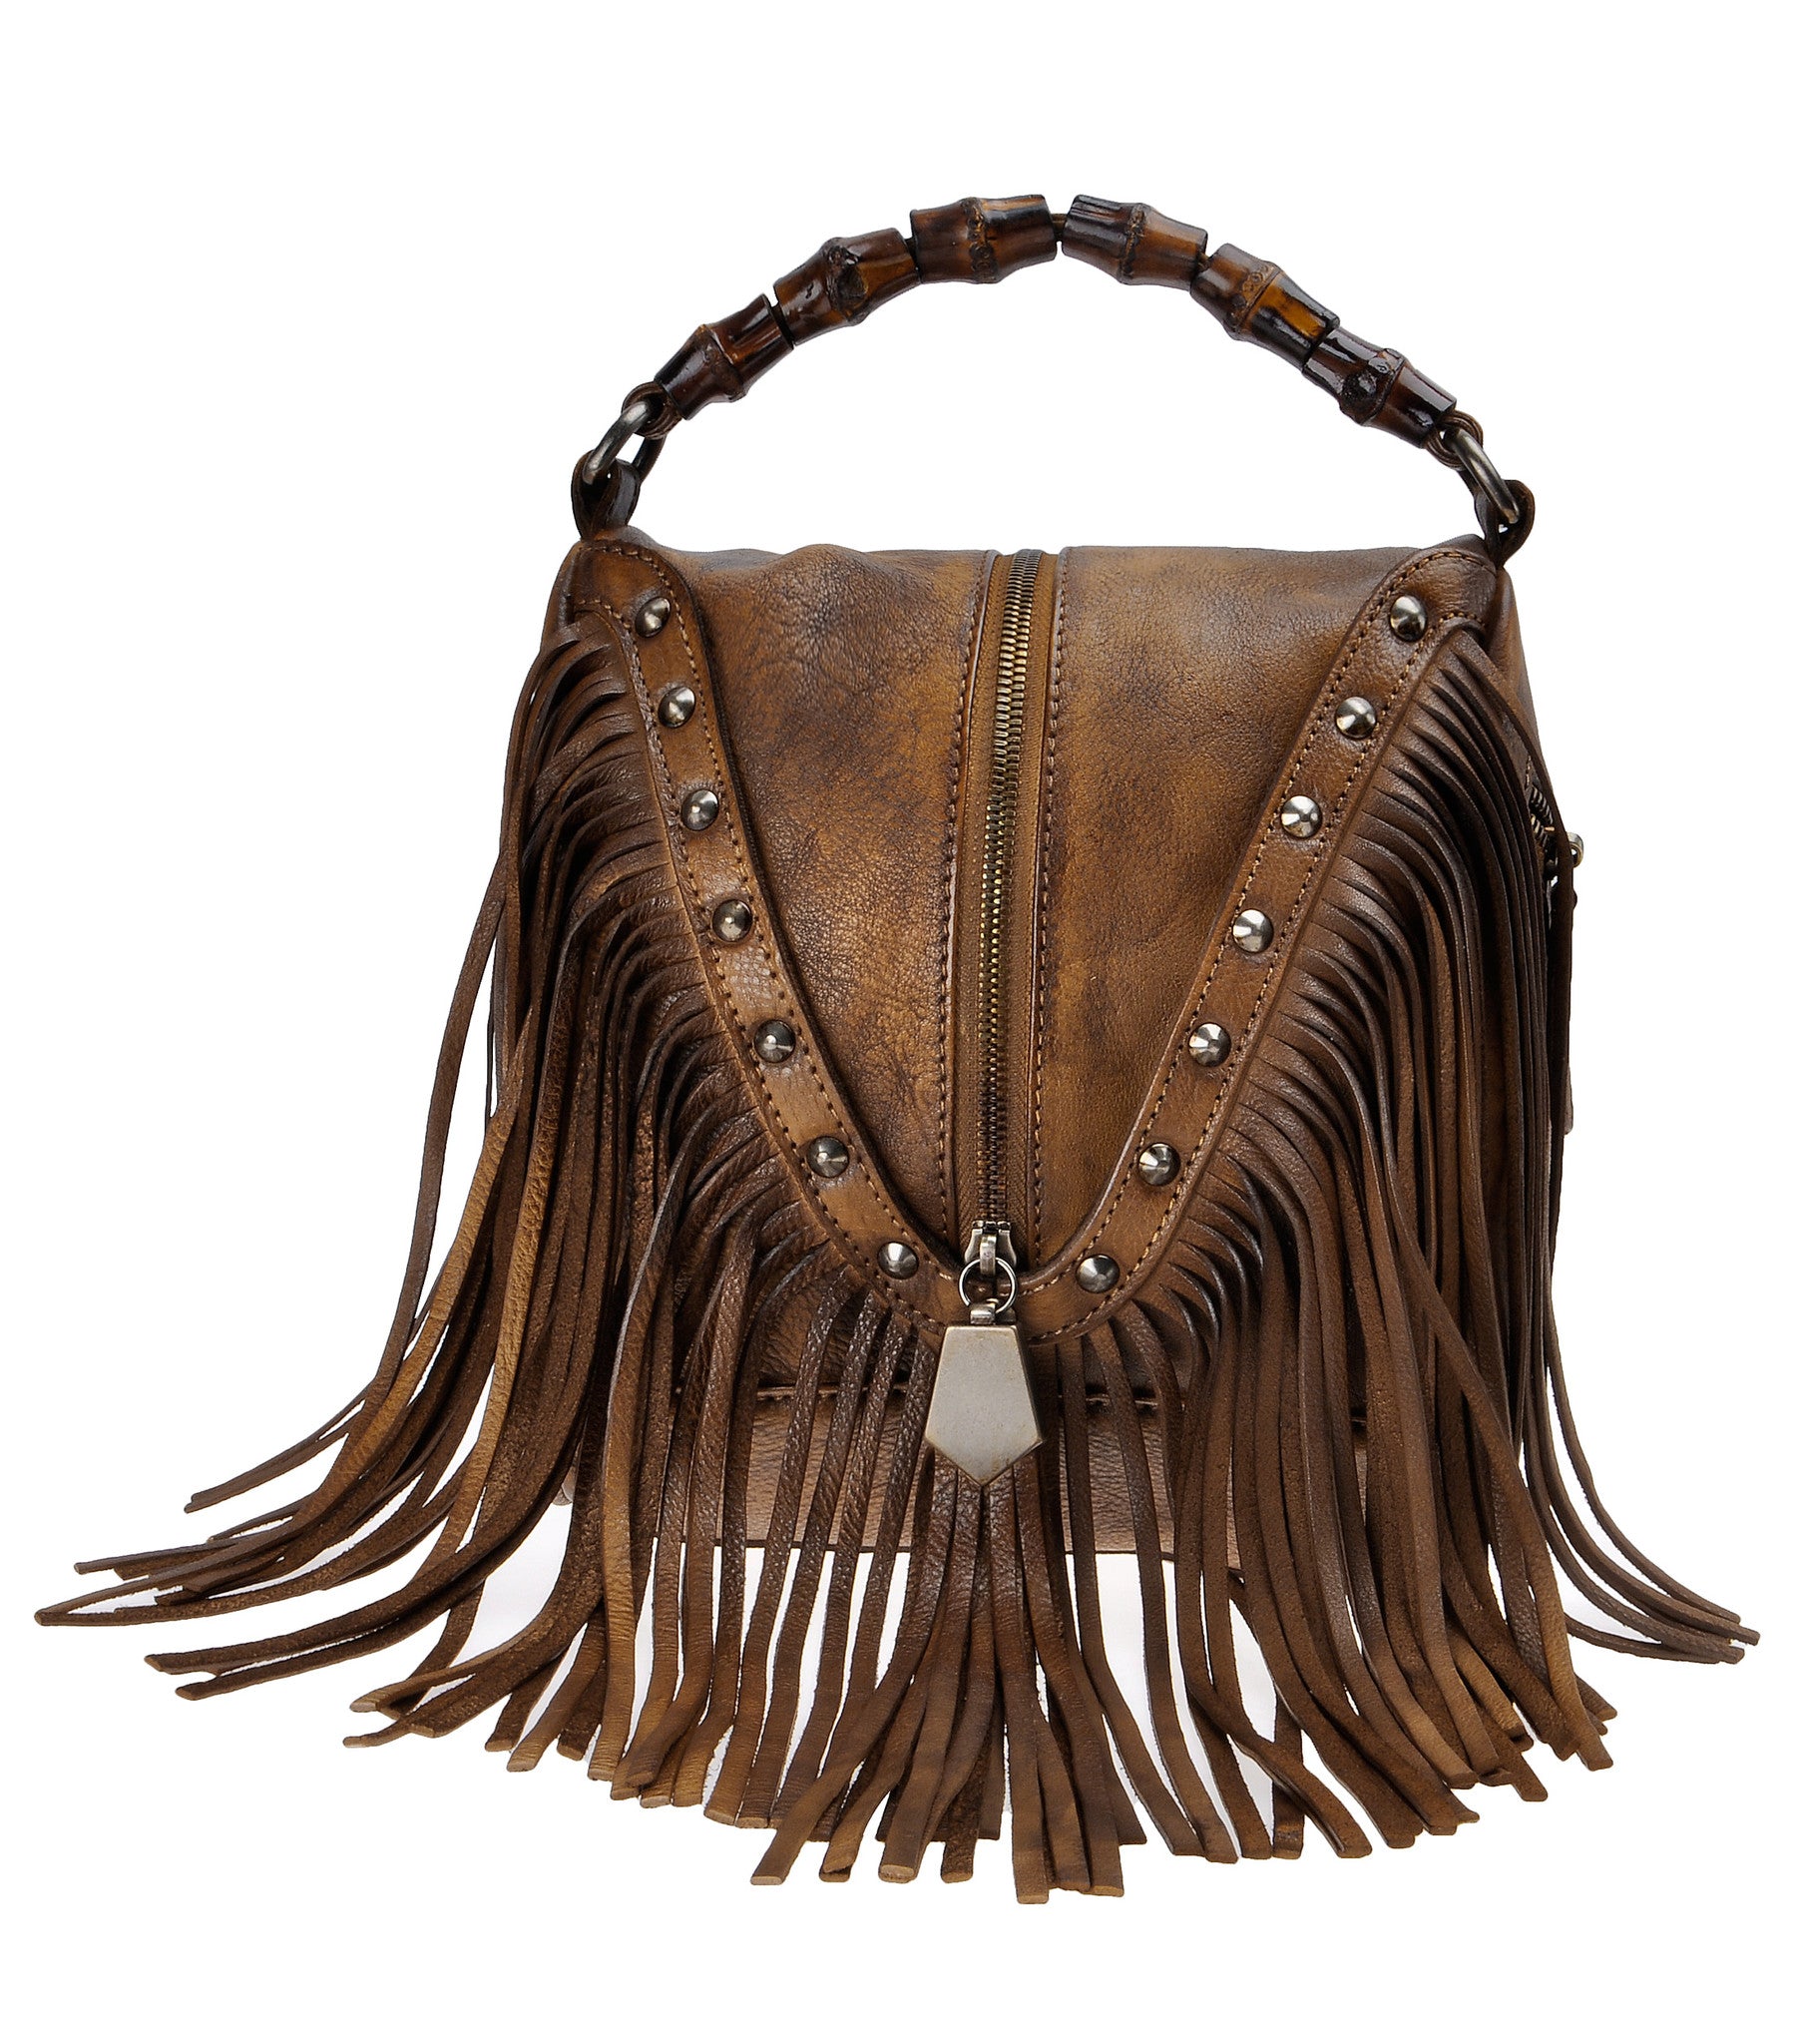 Adjustable Leather Strap – Vintage Boho Bags